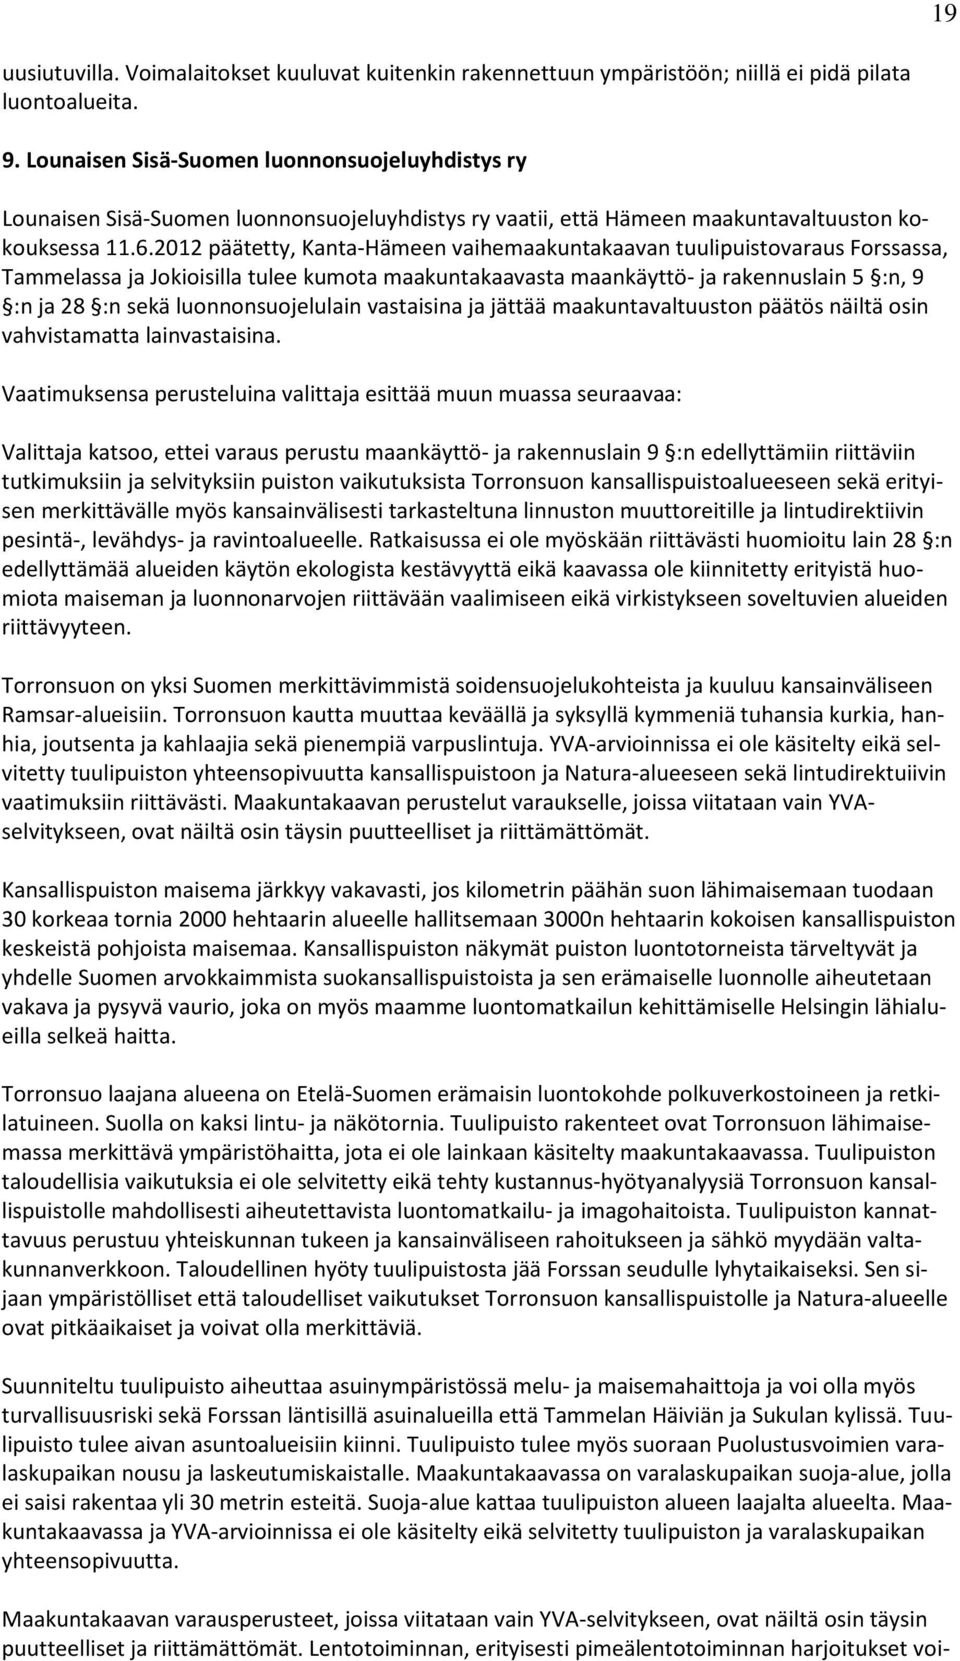 2012 päätetty, Kanta-Hämeen vaihemaakuntakaavan tuulipuistovaraus Forssassa, Tammelassa ja Jokioisilla tulee kumota maakuntakaavasta maankäyttö- ja rakennuslain 5 :n, 9 :n ja 28 :n sekä